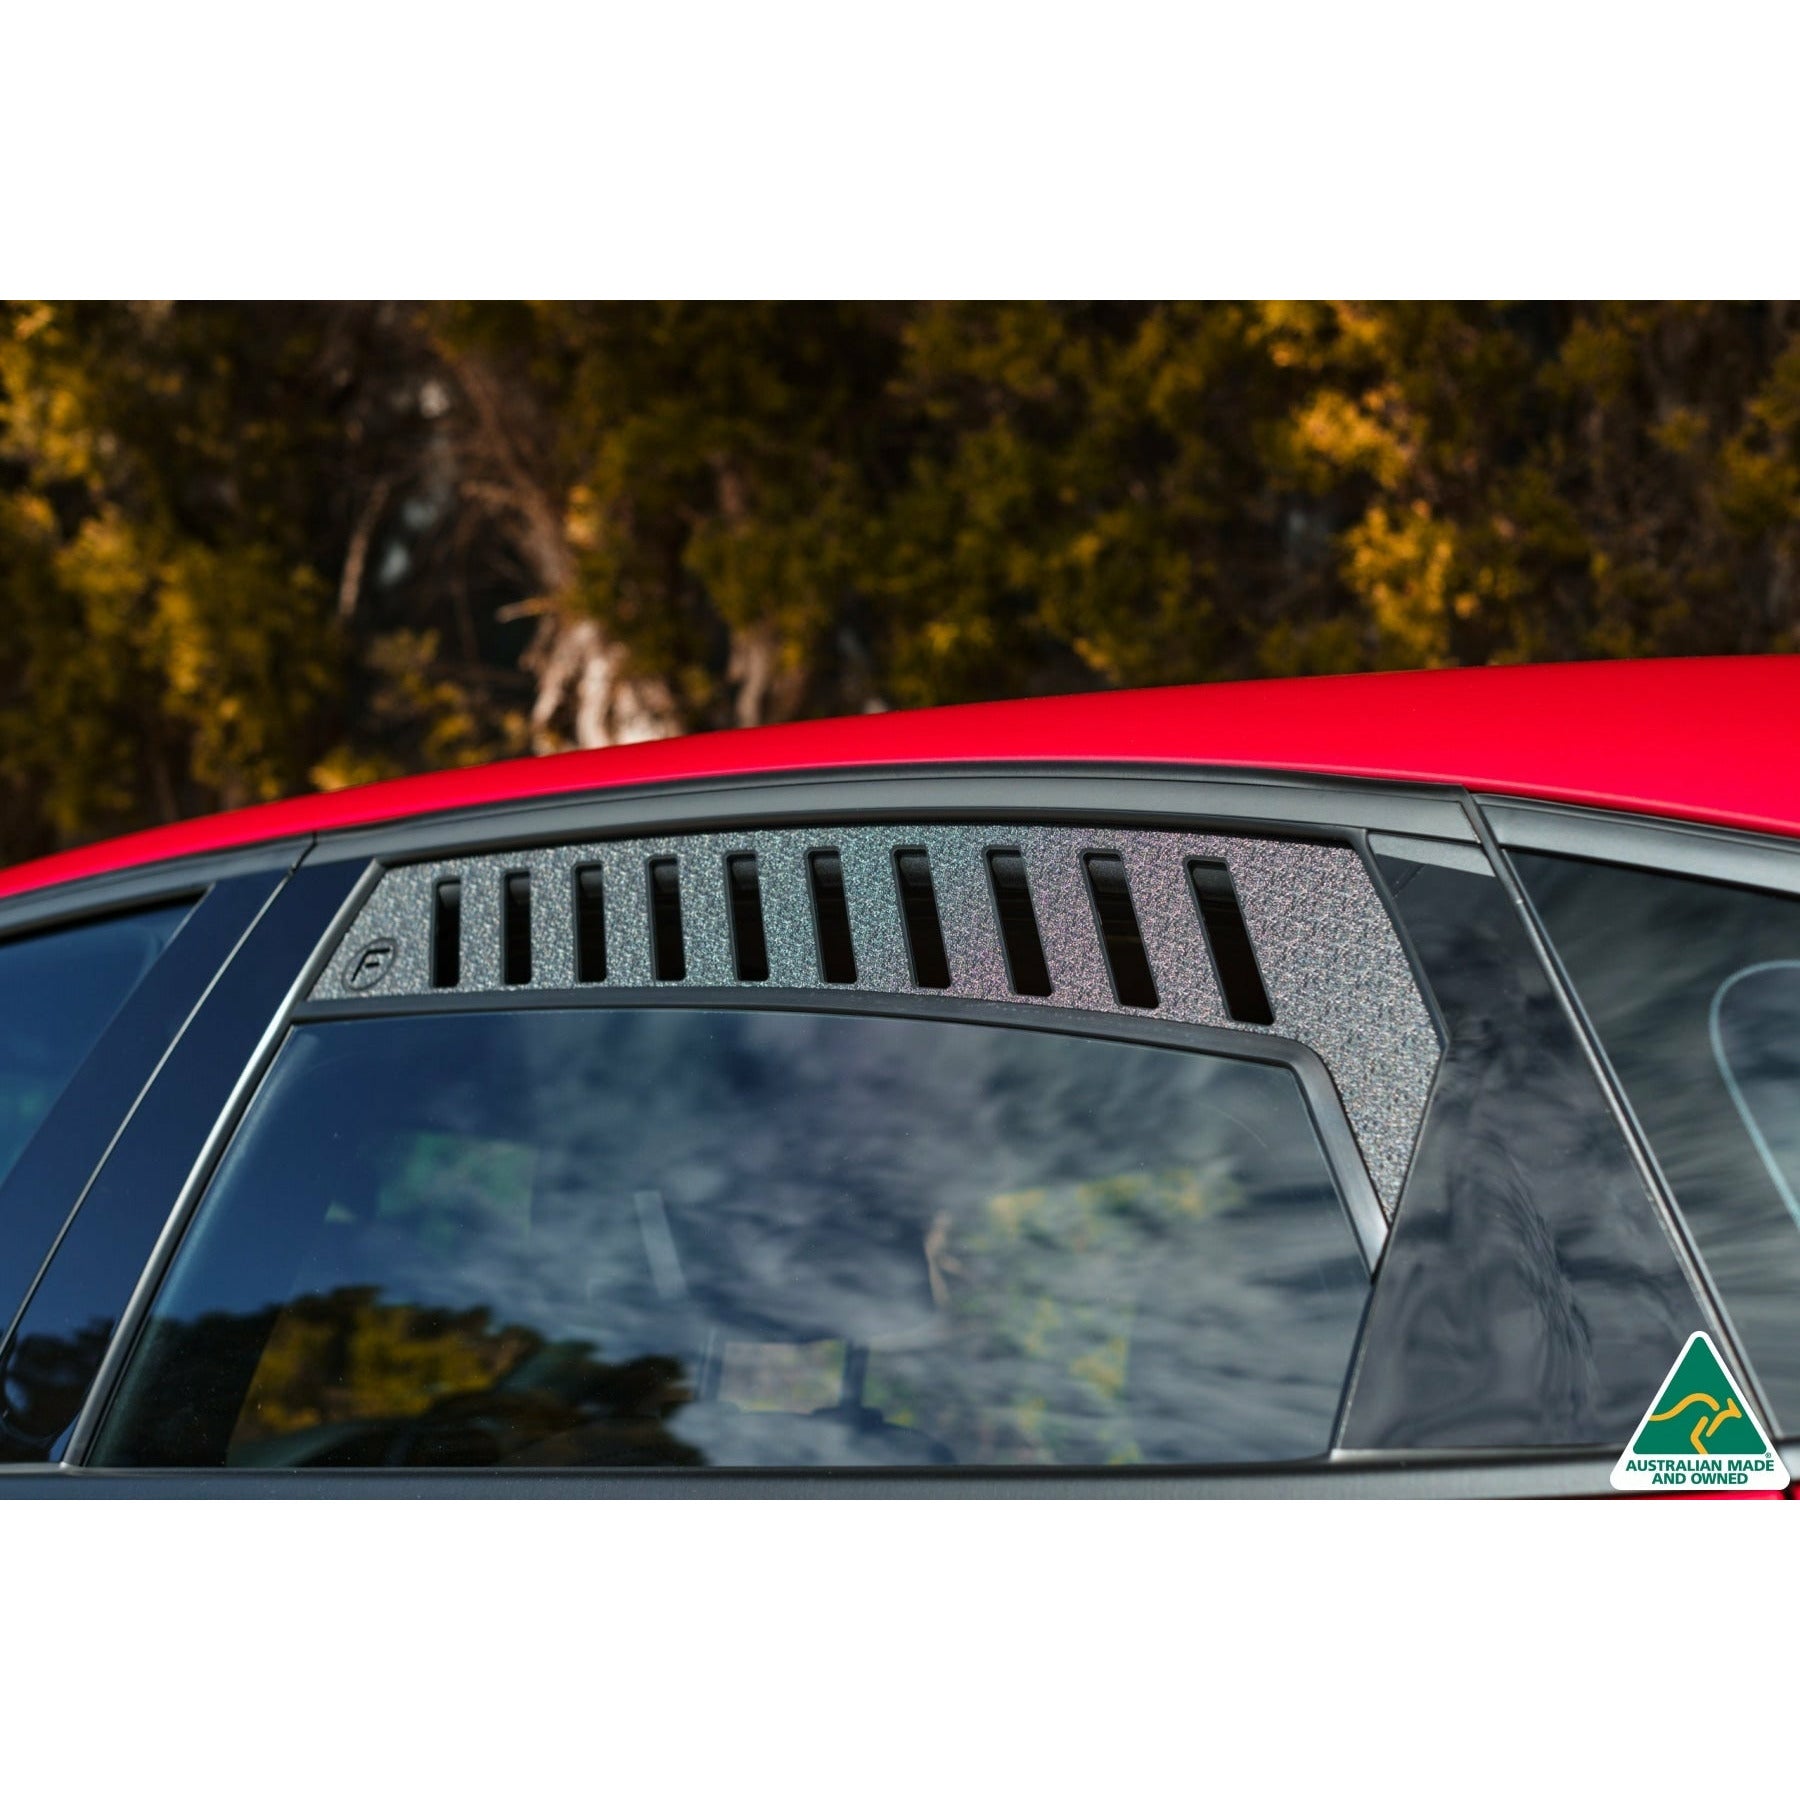 Kia Cerato GT Hatch Rear Window Vents (Pair)